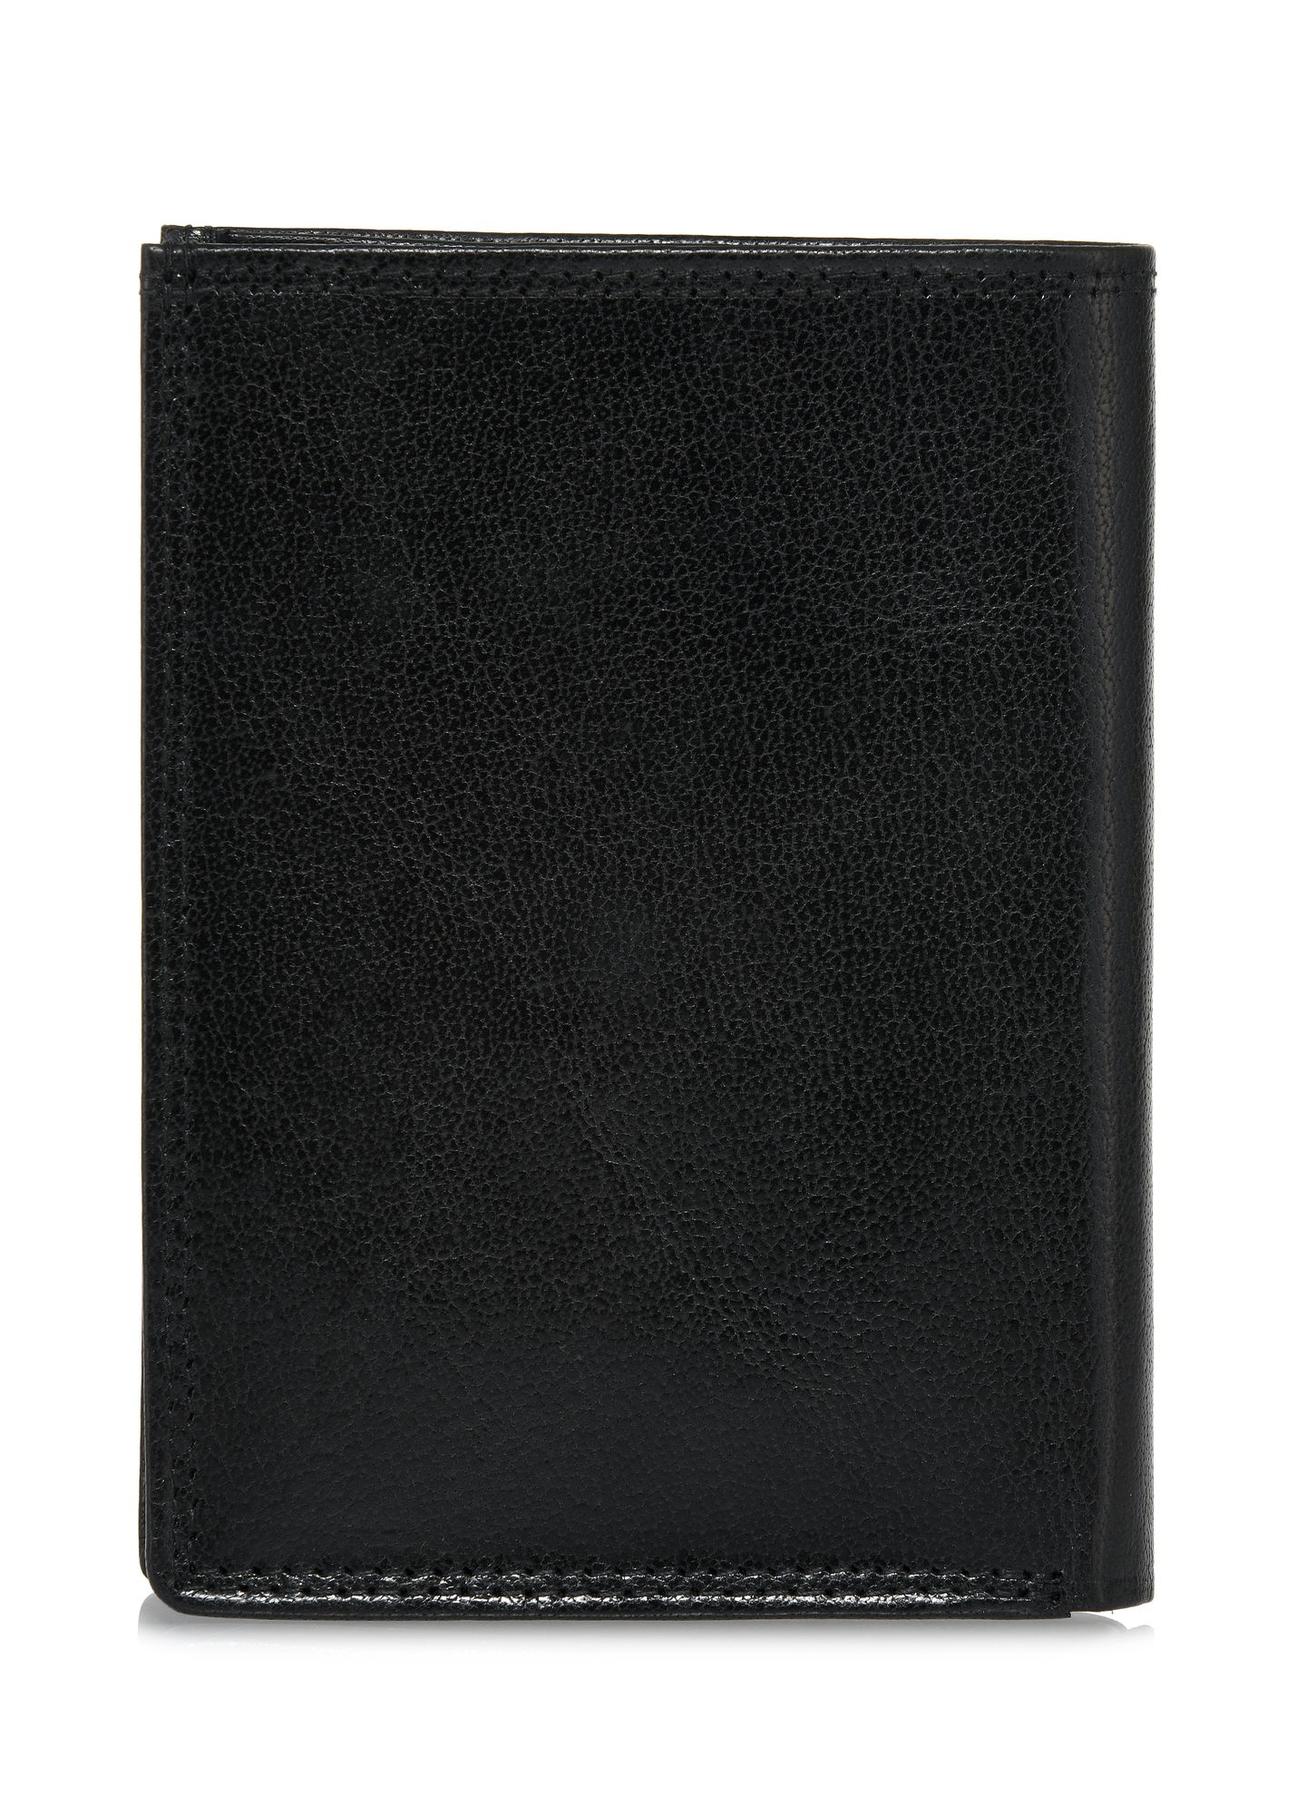 Skórzany niezapinany czarny portfel męski PORMS-0554-99(W24)